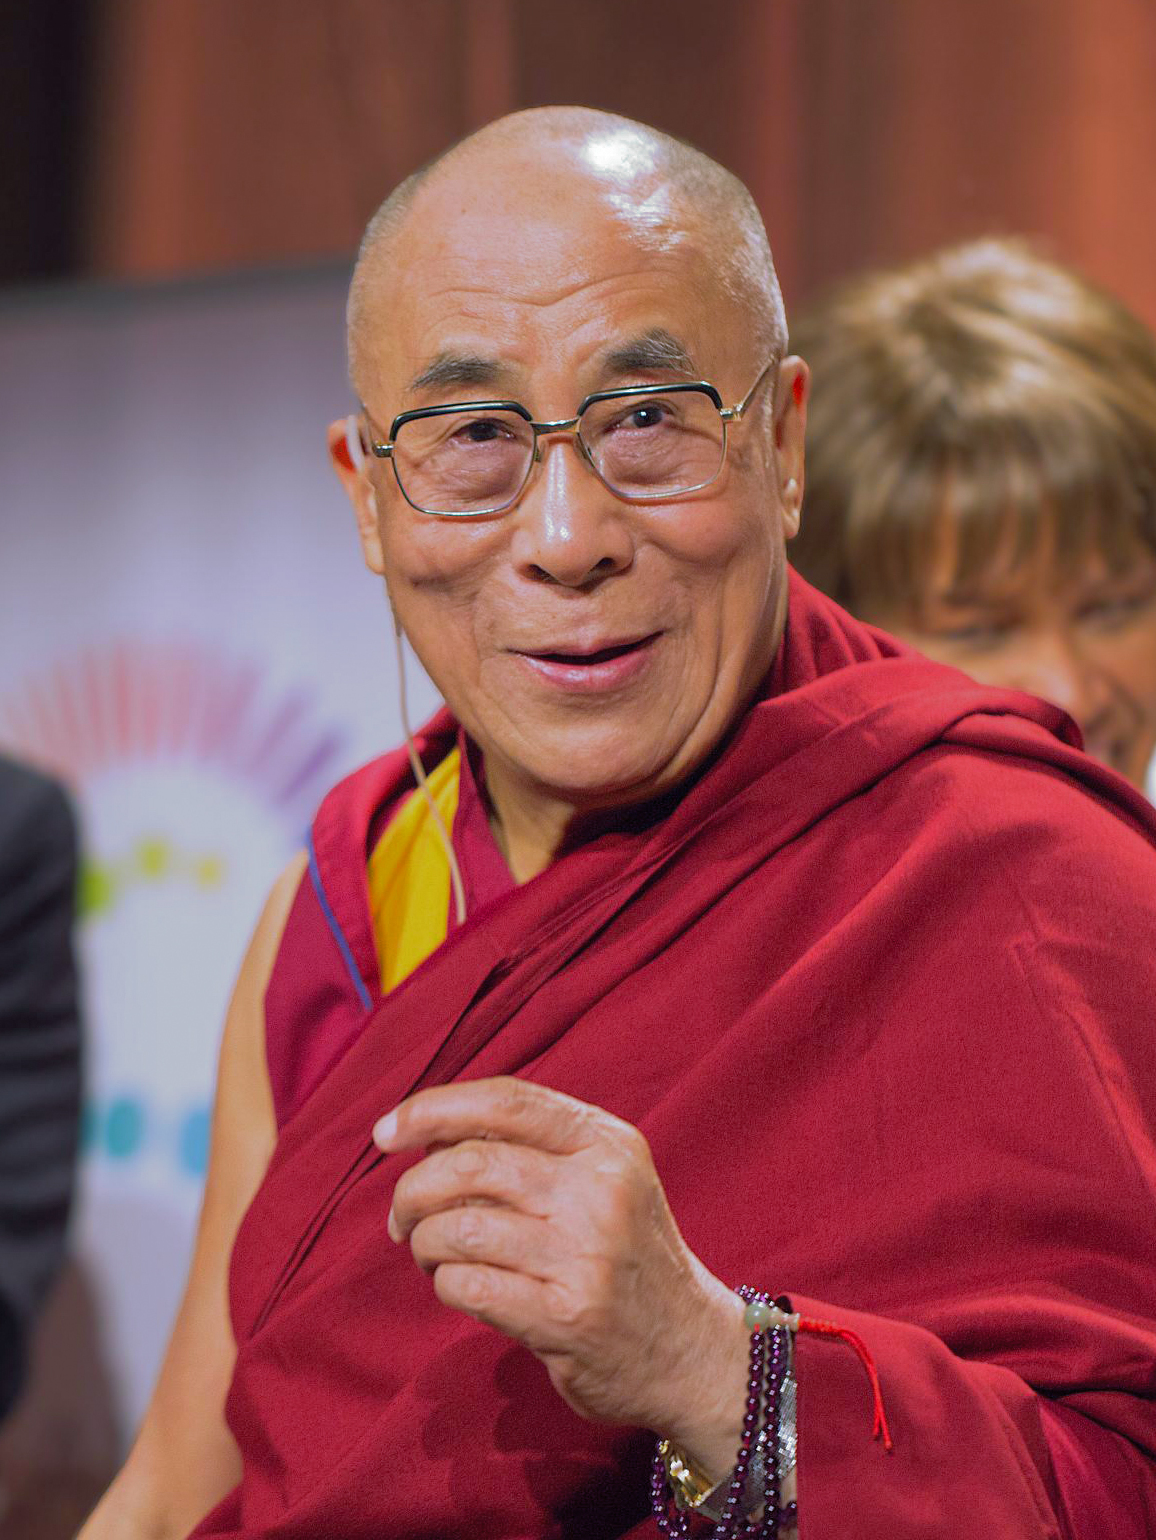 Author Dalai Lama